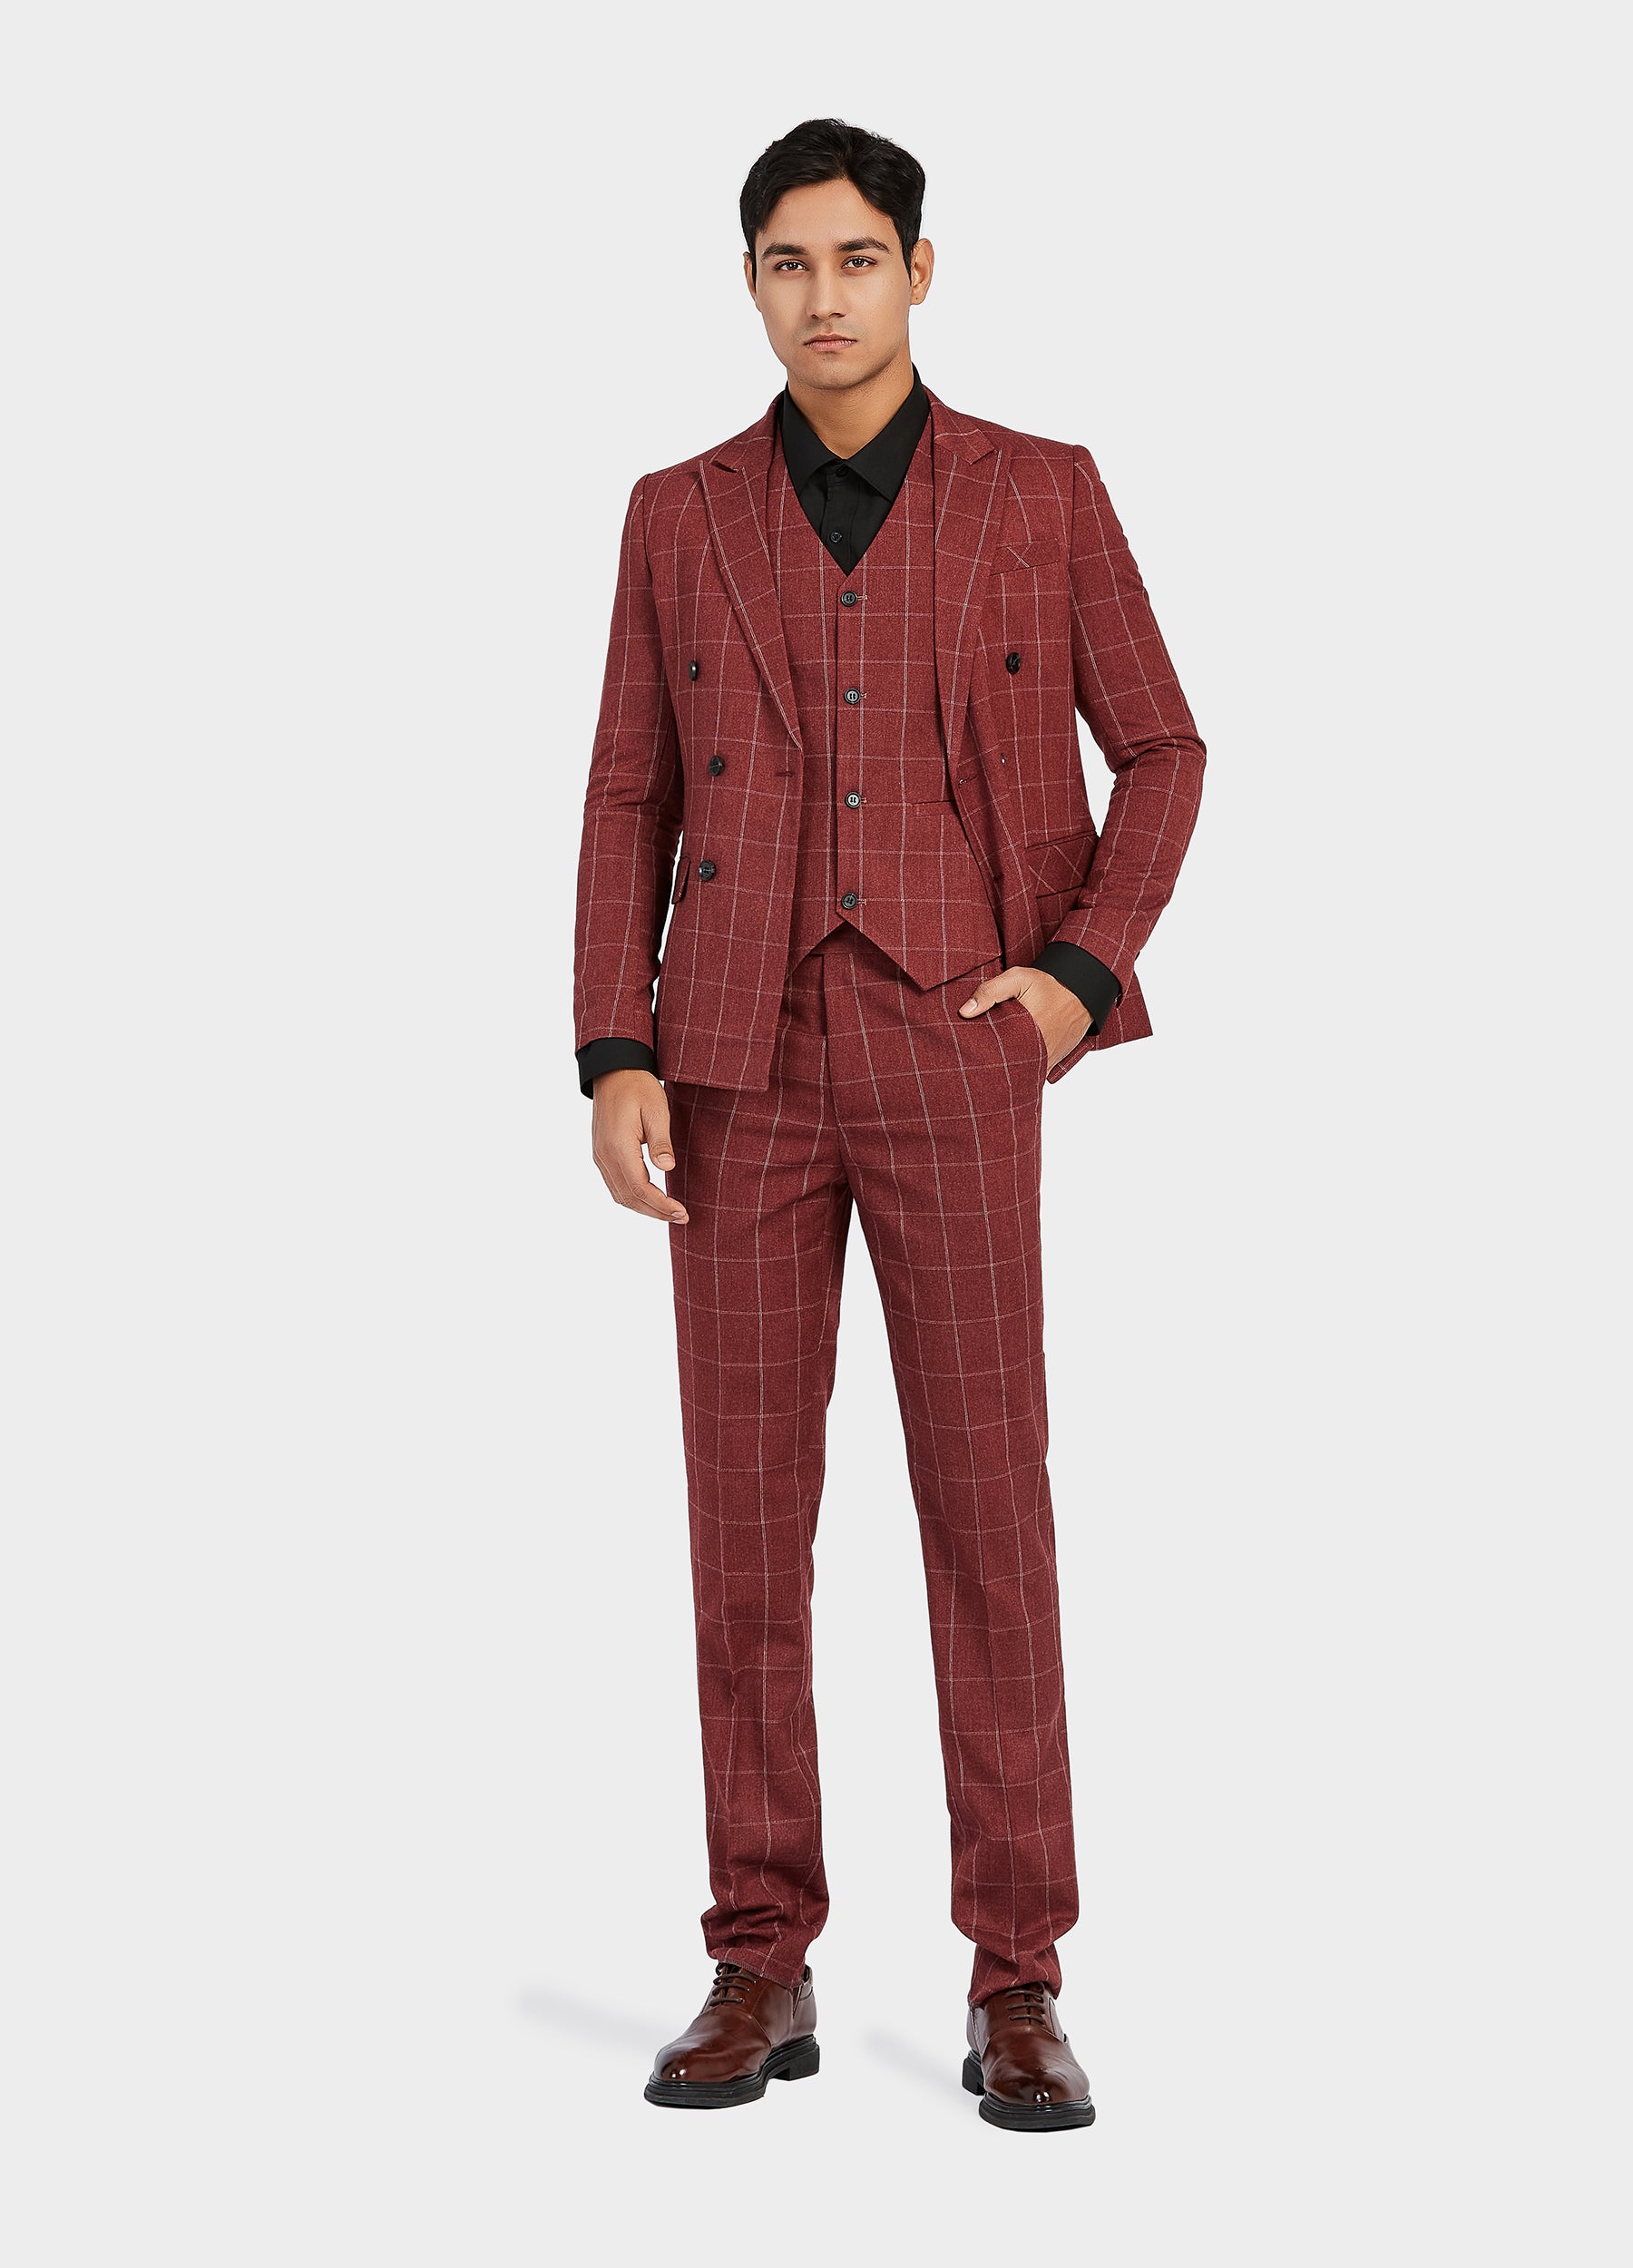 1PA1 Men's 3 Pieces Slim Fit Plaid Vested Suit, Wedding Tuxedo - Two Button Jacket, Vest & Pants